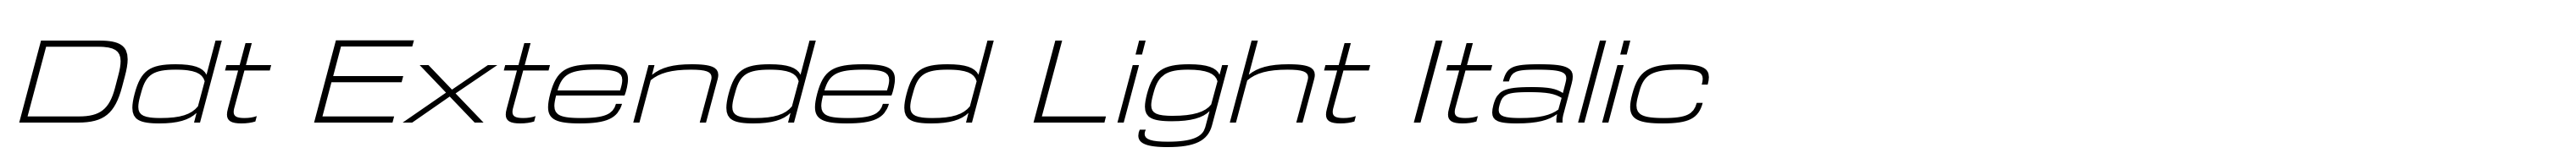 Ddt Extended Light Italic